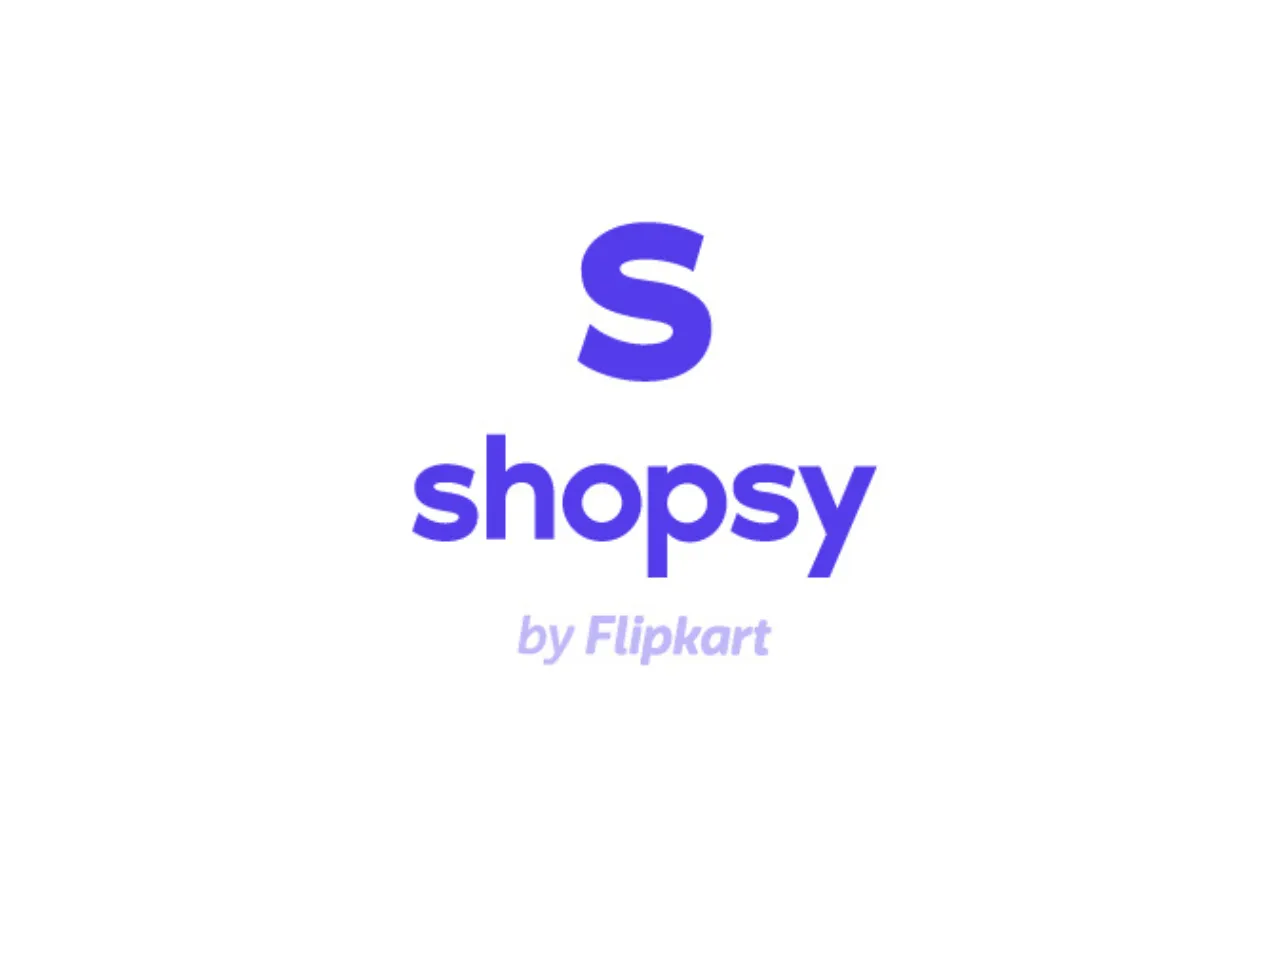 Flipkart's Shopsy delivered to 16 Million customers in Q4 FY23